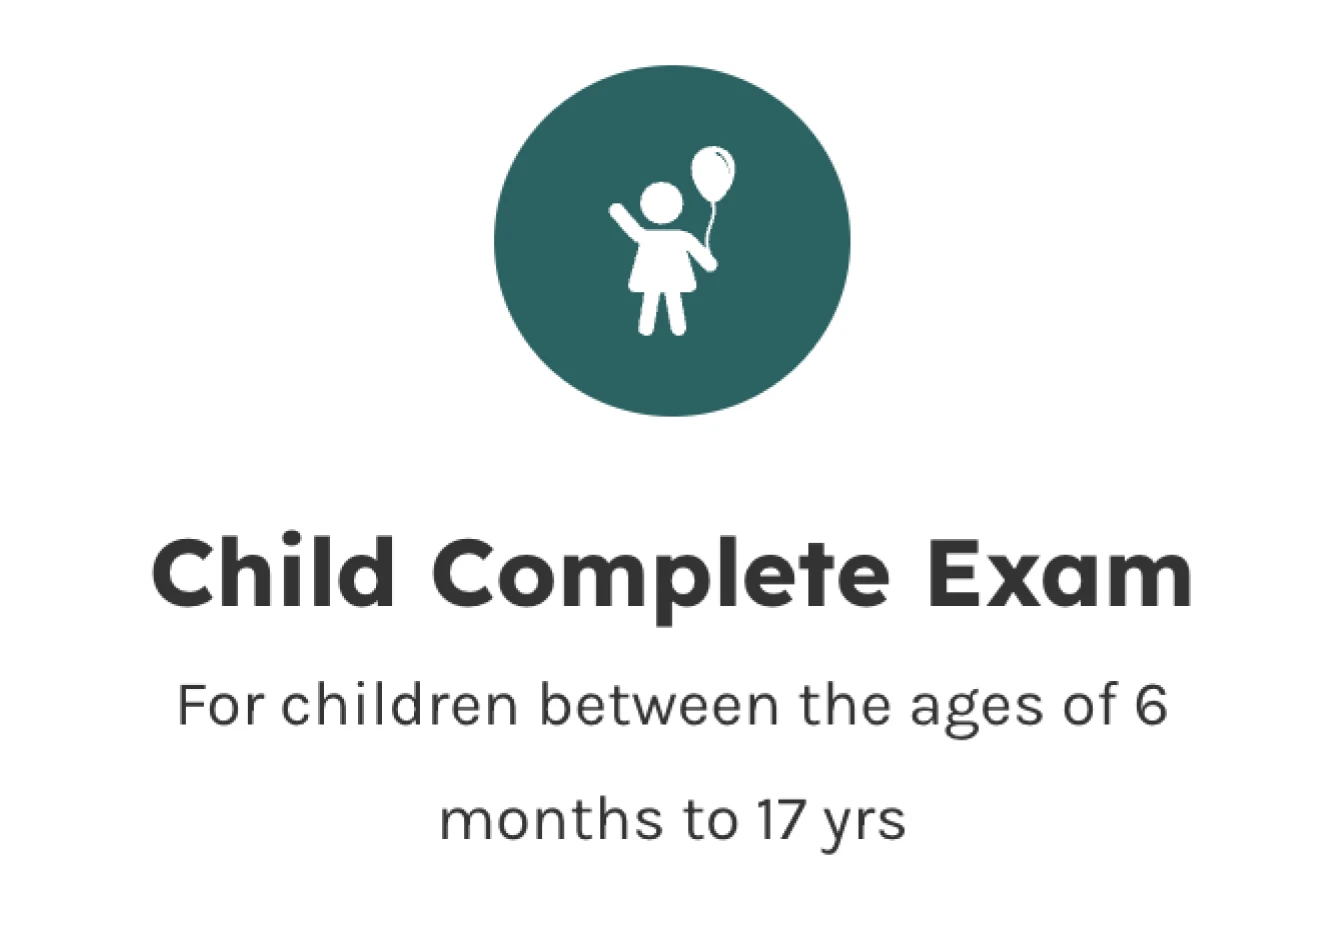 Child Complete Exam